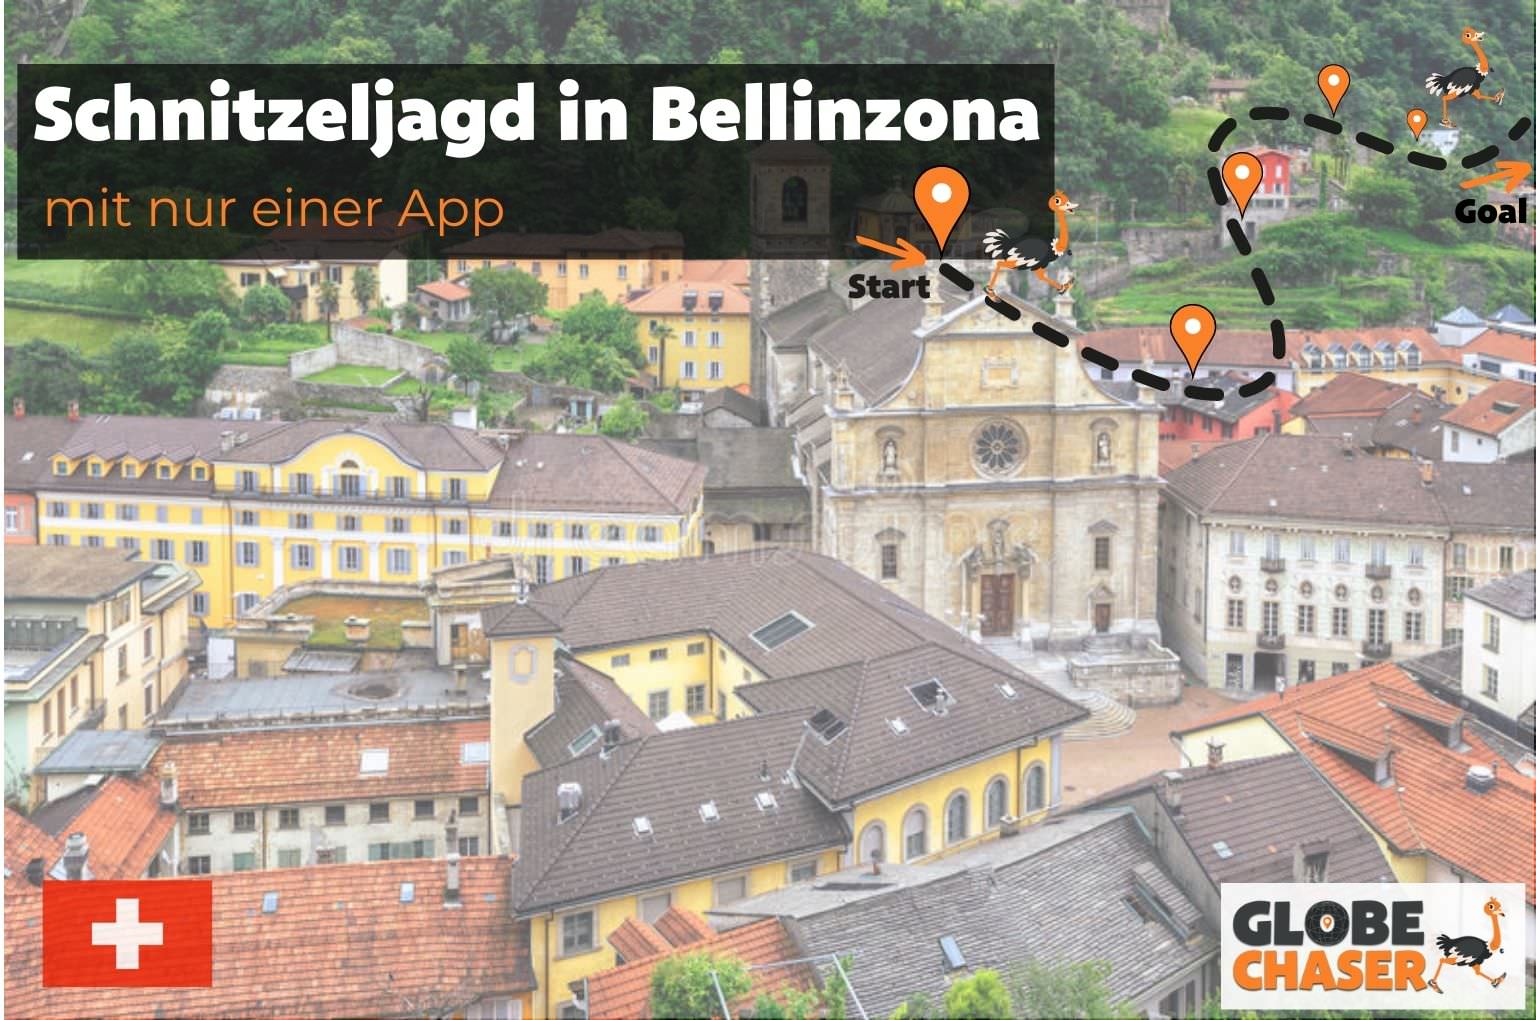 Schnitzeljagd in Bellinzona mit App - Globe Chaser Erlebnisse Schweiz